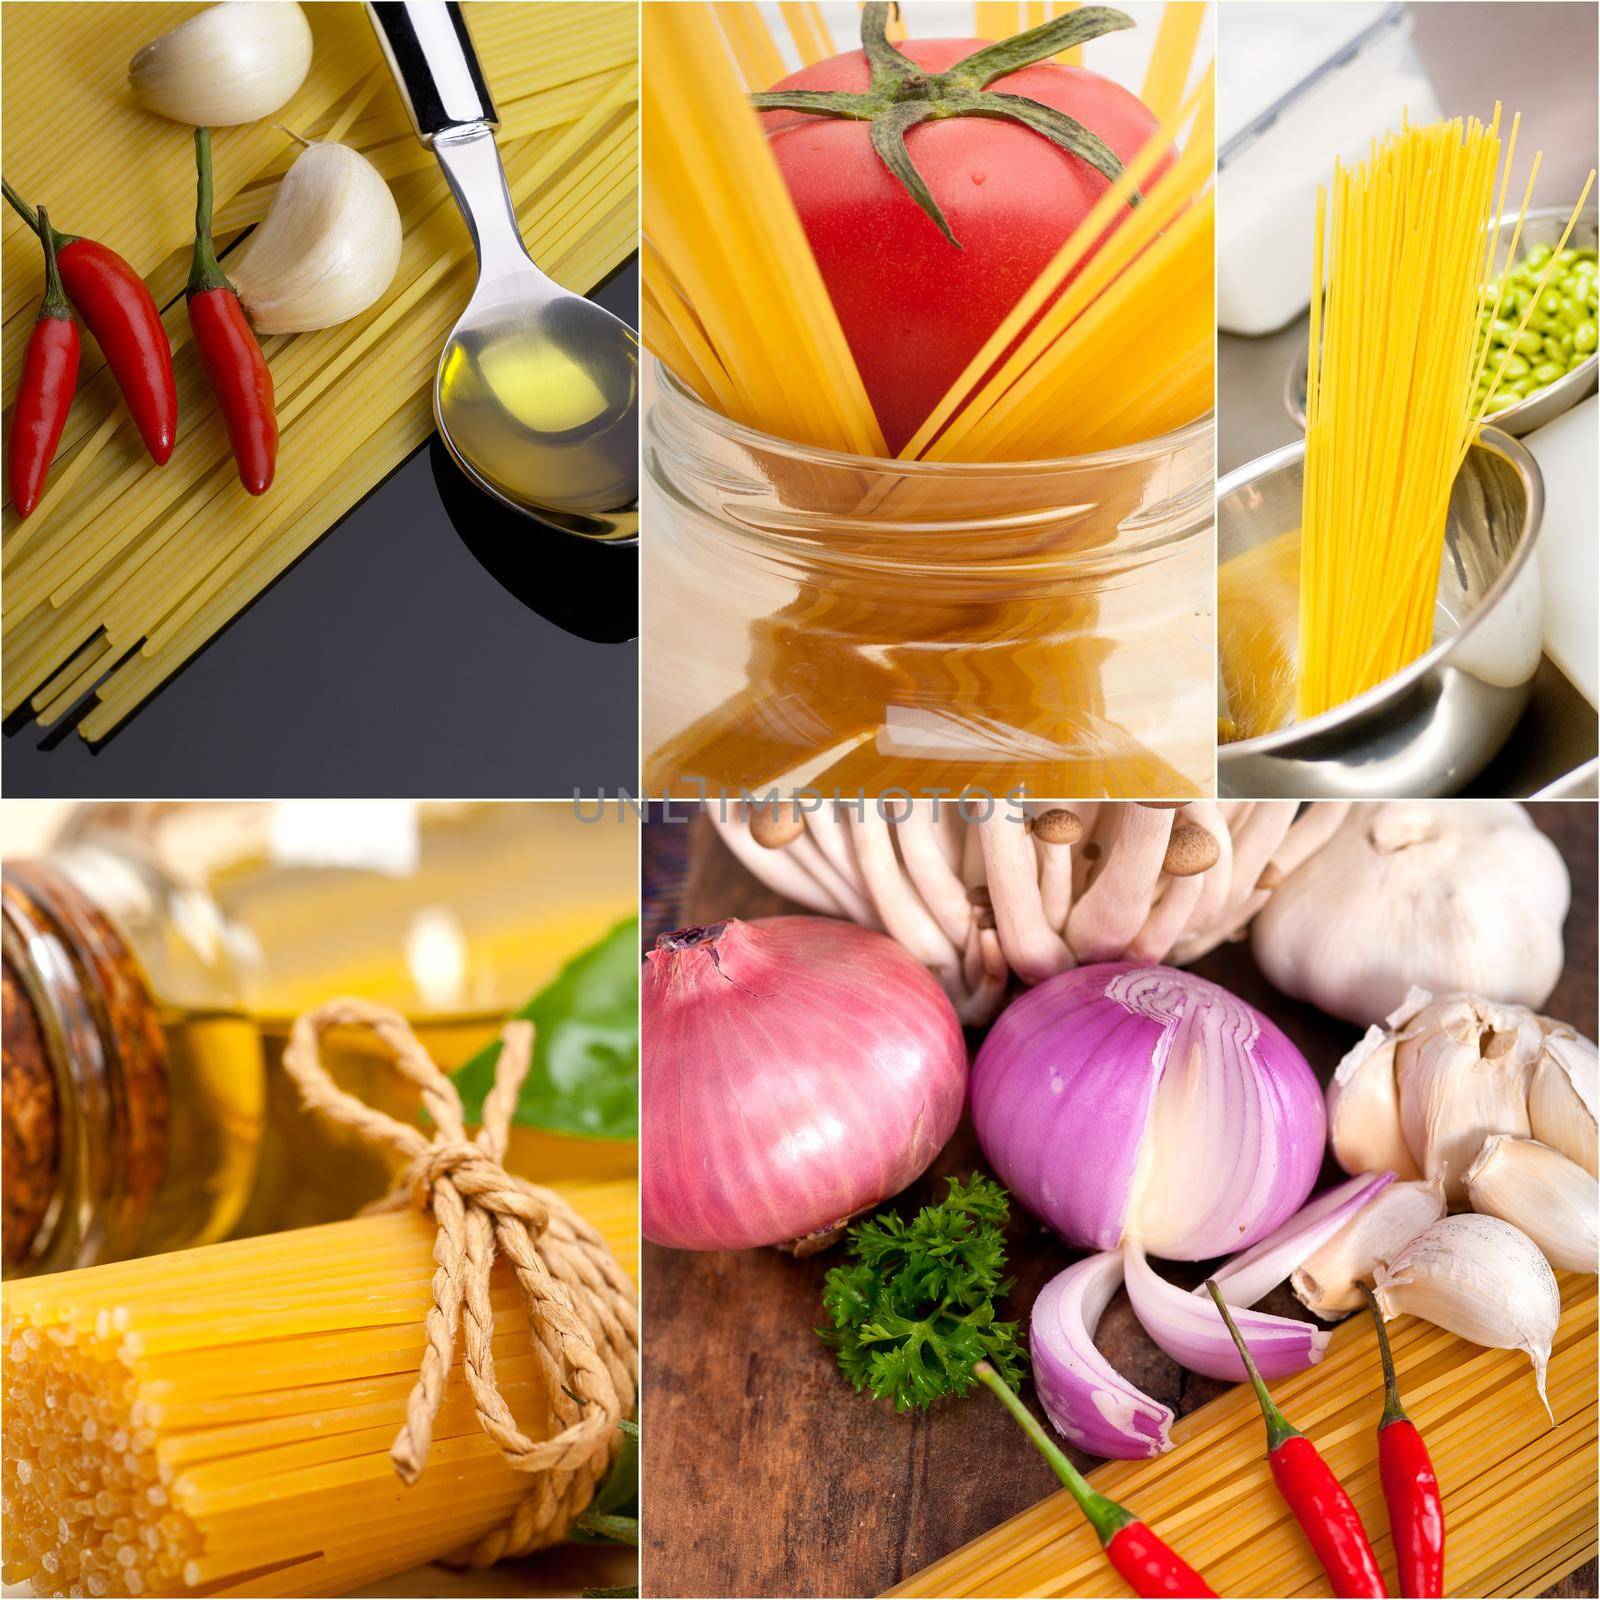 healthy Vegetarian vegan food collage by keko64